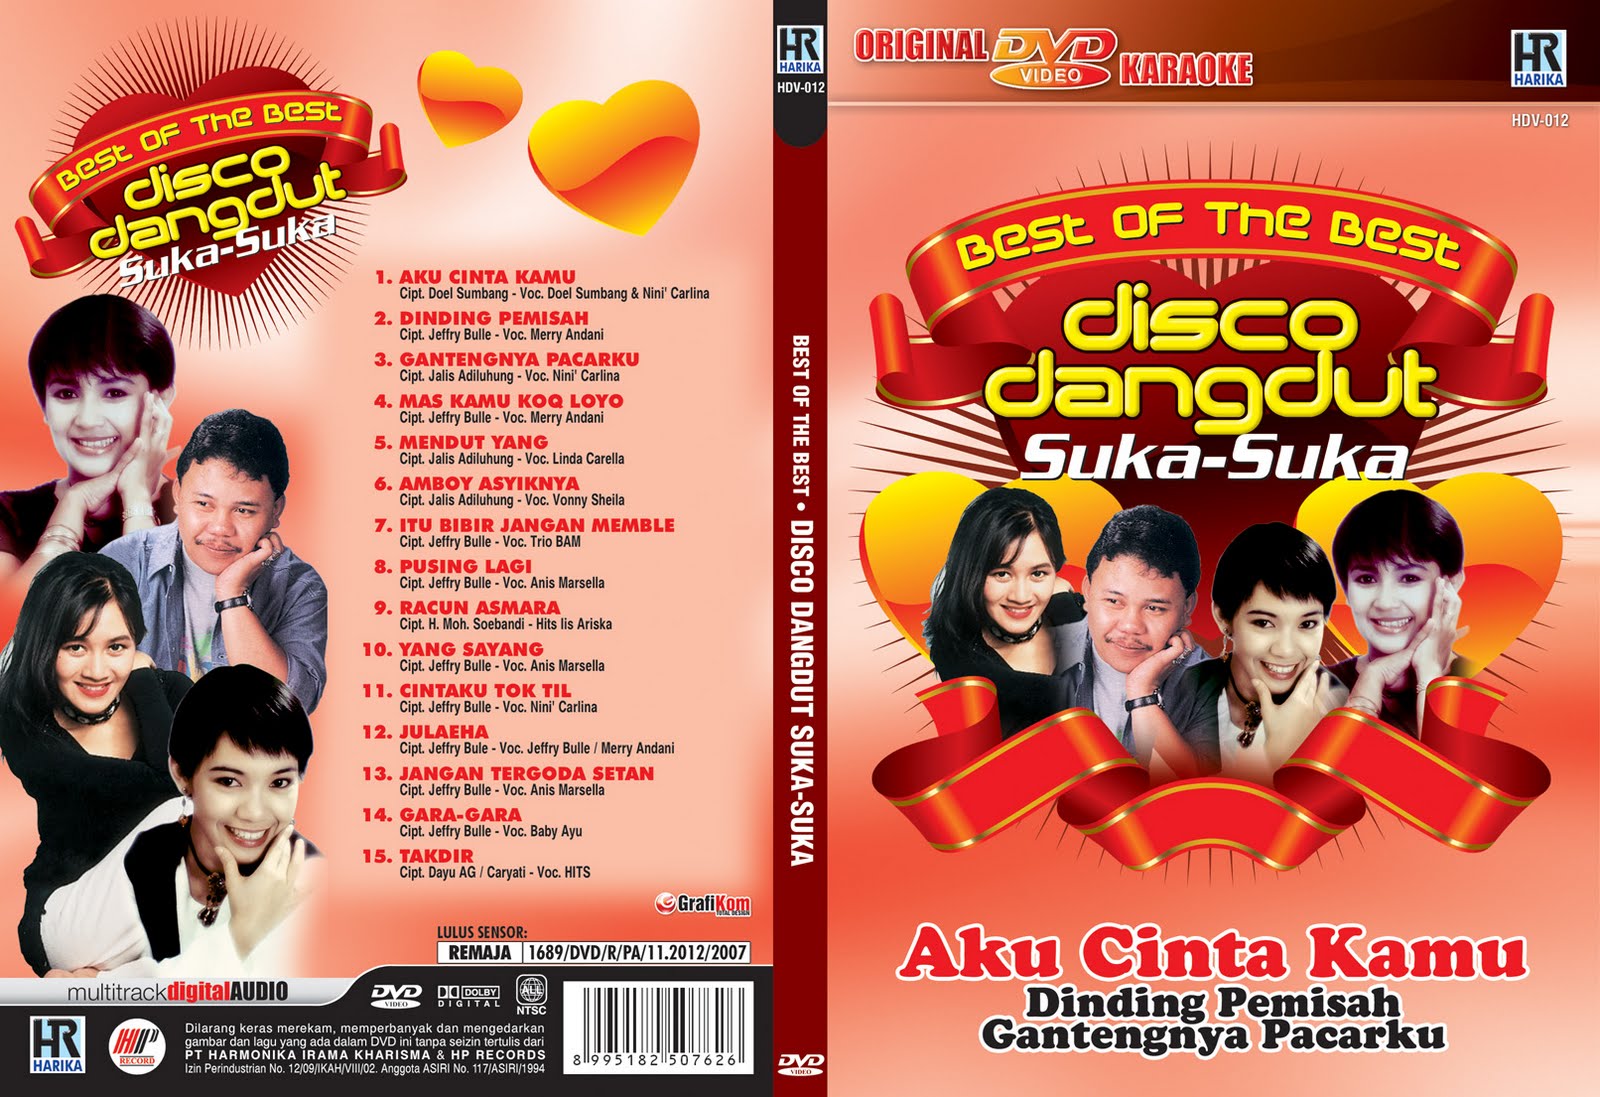 DVD Karaoke : Best of The Best Disco Dangdut Suka-suka GrafiKom 